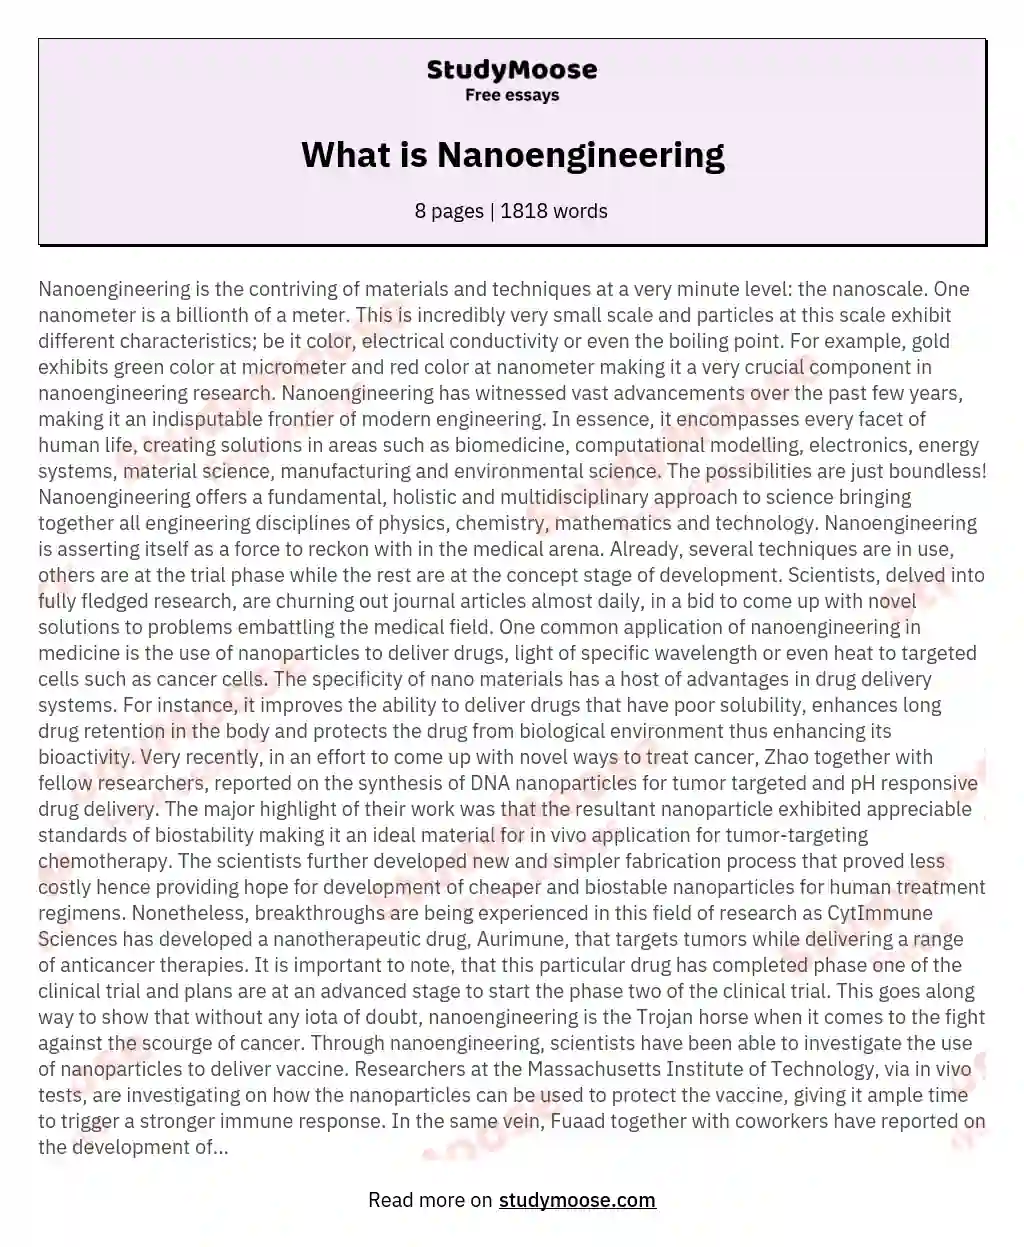 What is Nanoengineering essay